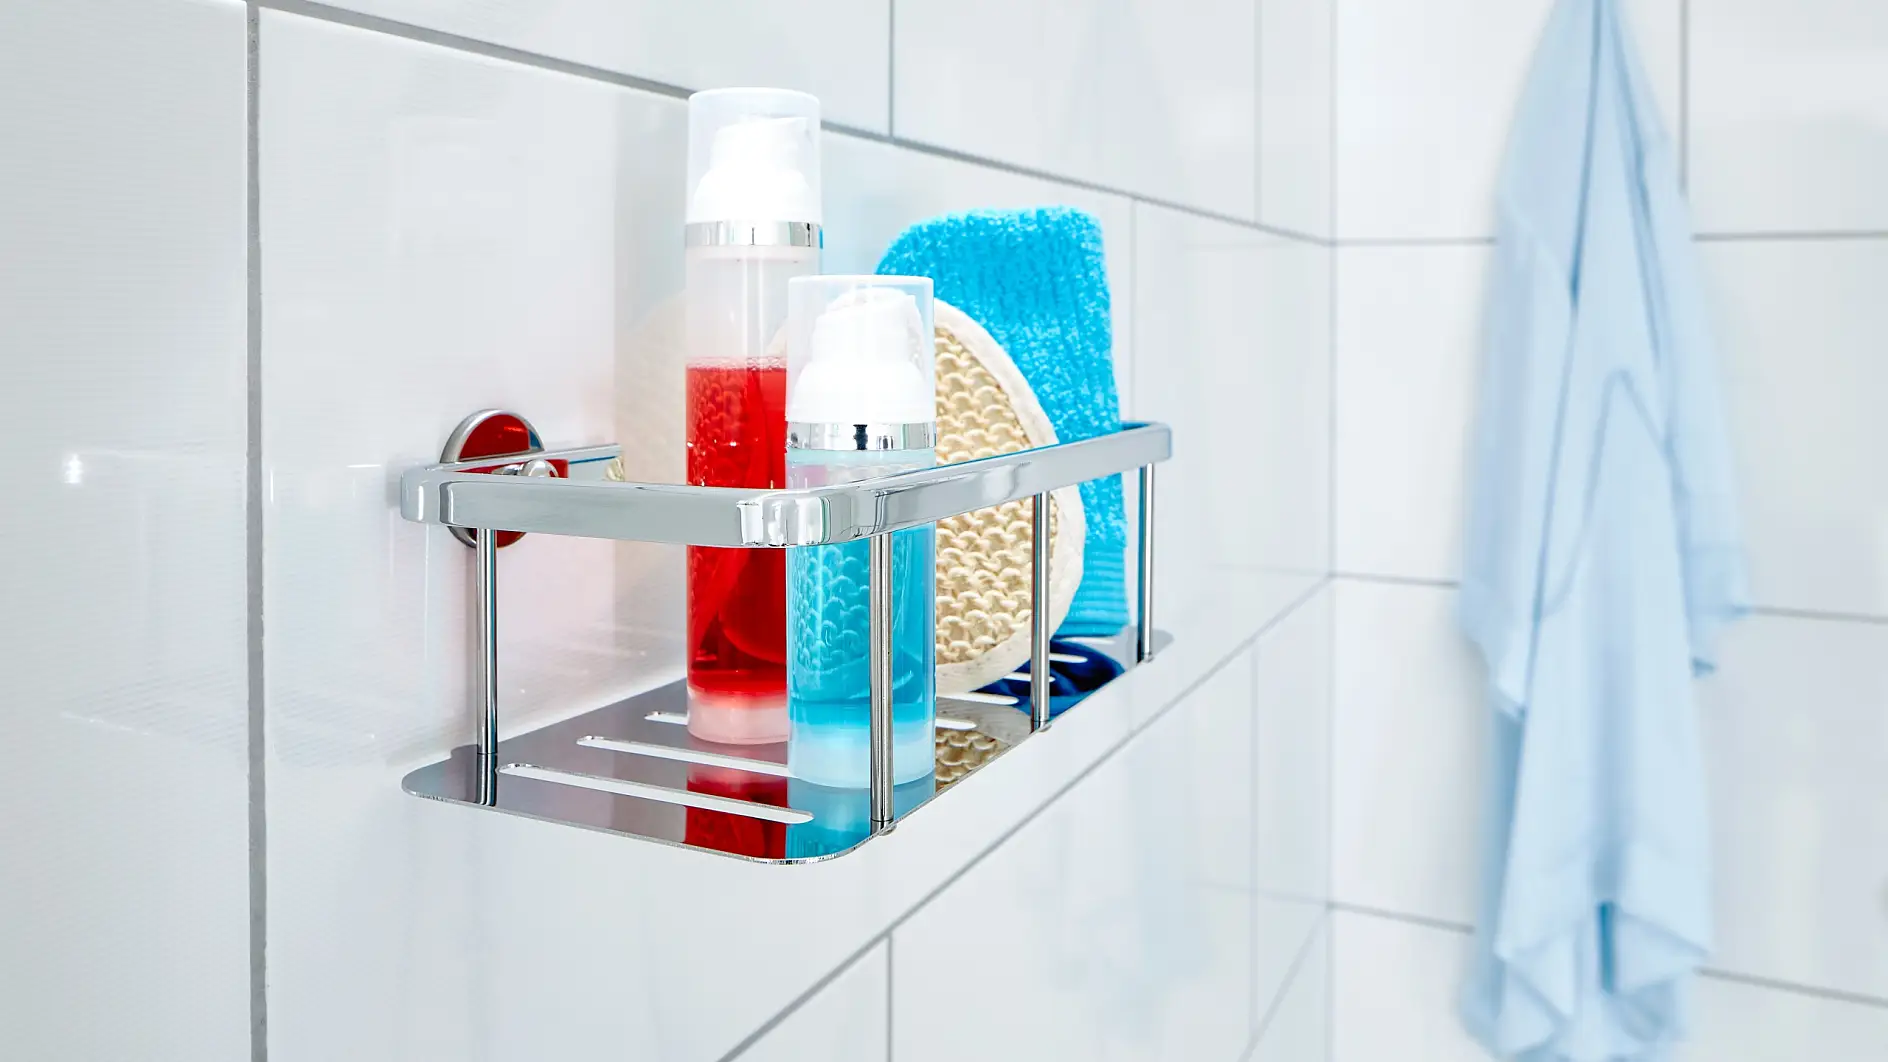 Udržujte svoje každodenné sprchové potreby pripravené a poruke, ale mimo dosahu kvapiek vody.